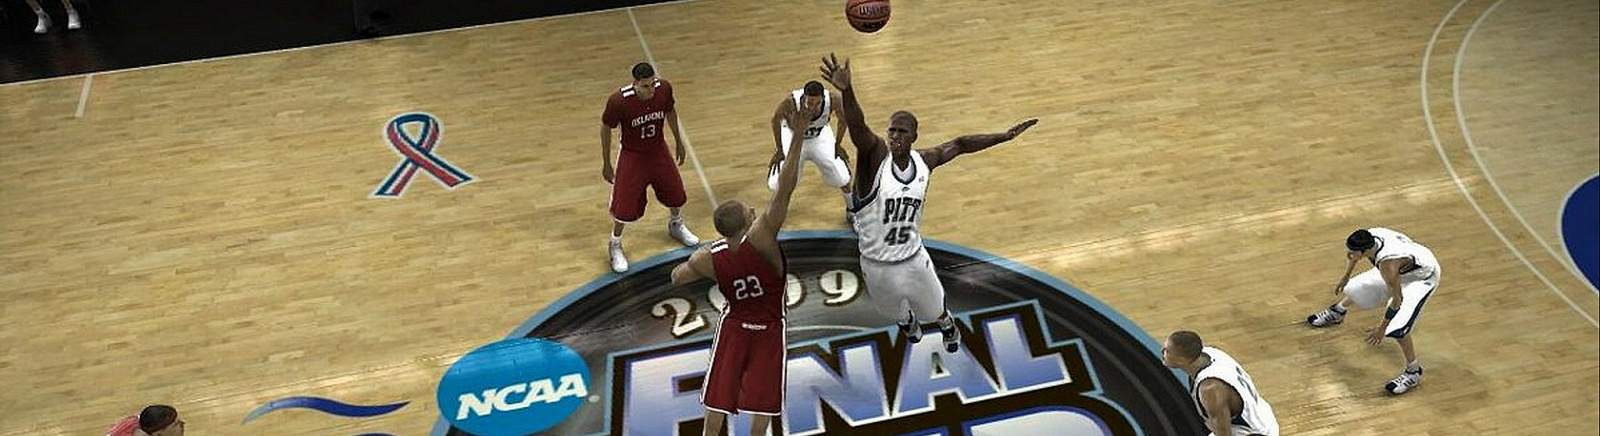 Дата выхода NCAA Basketball 09 March Madness Edition  на Xbox 360 в России и во всем мире